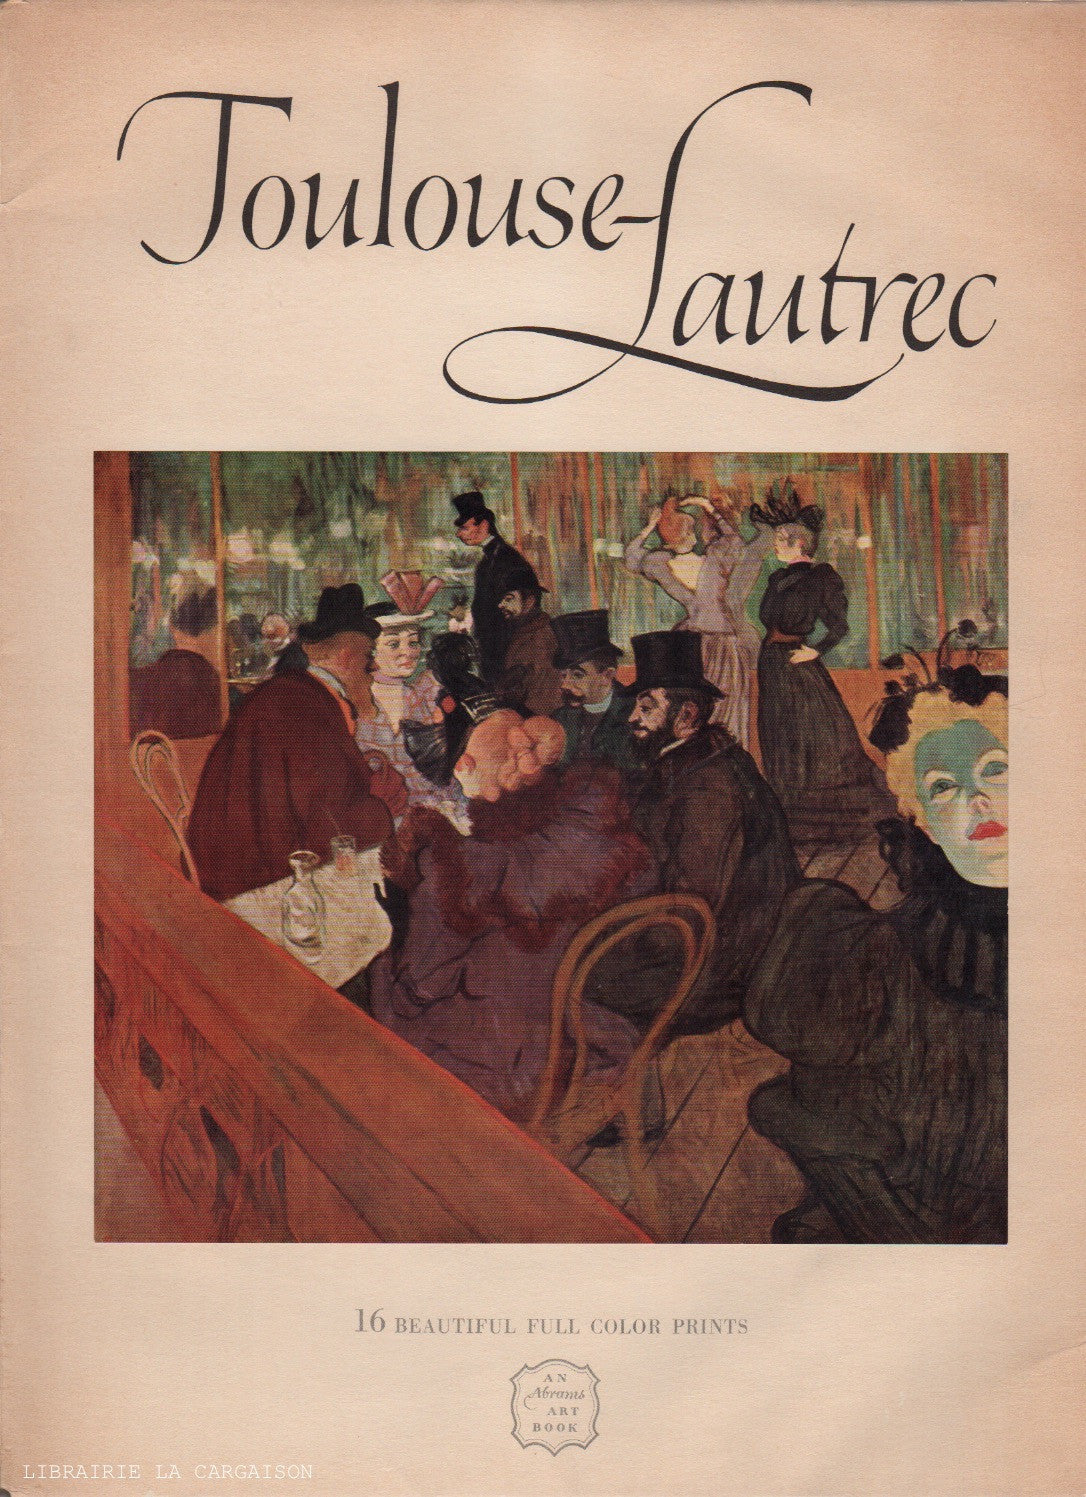 TOULOUSE-LAUTREC, HENRI DE. Toulouse-Lautrec : 16 Beautiful Full Color Prints